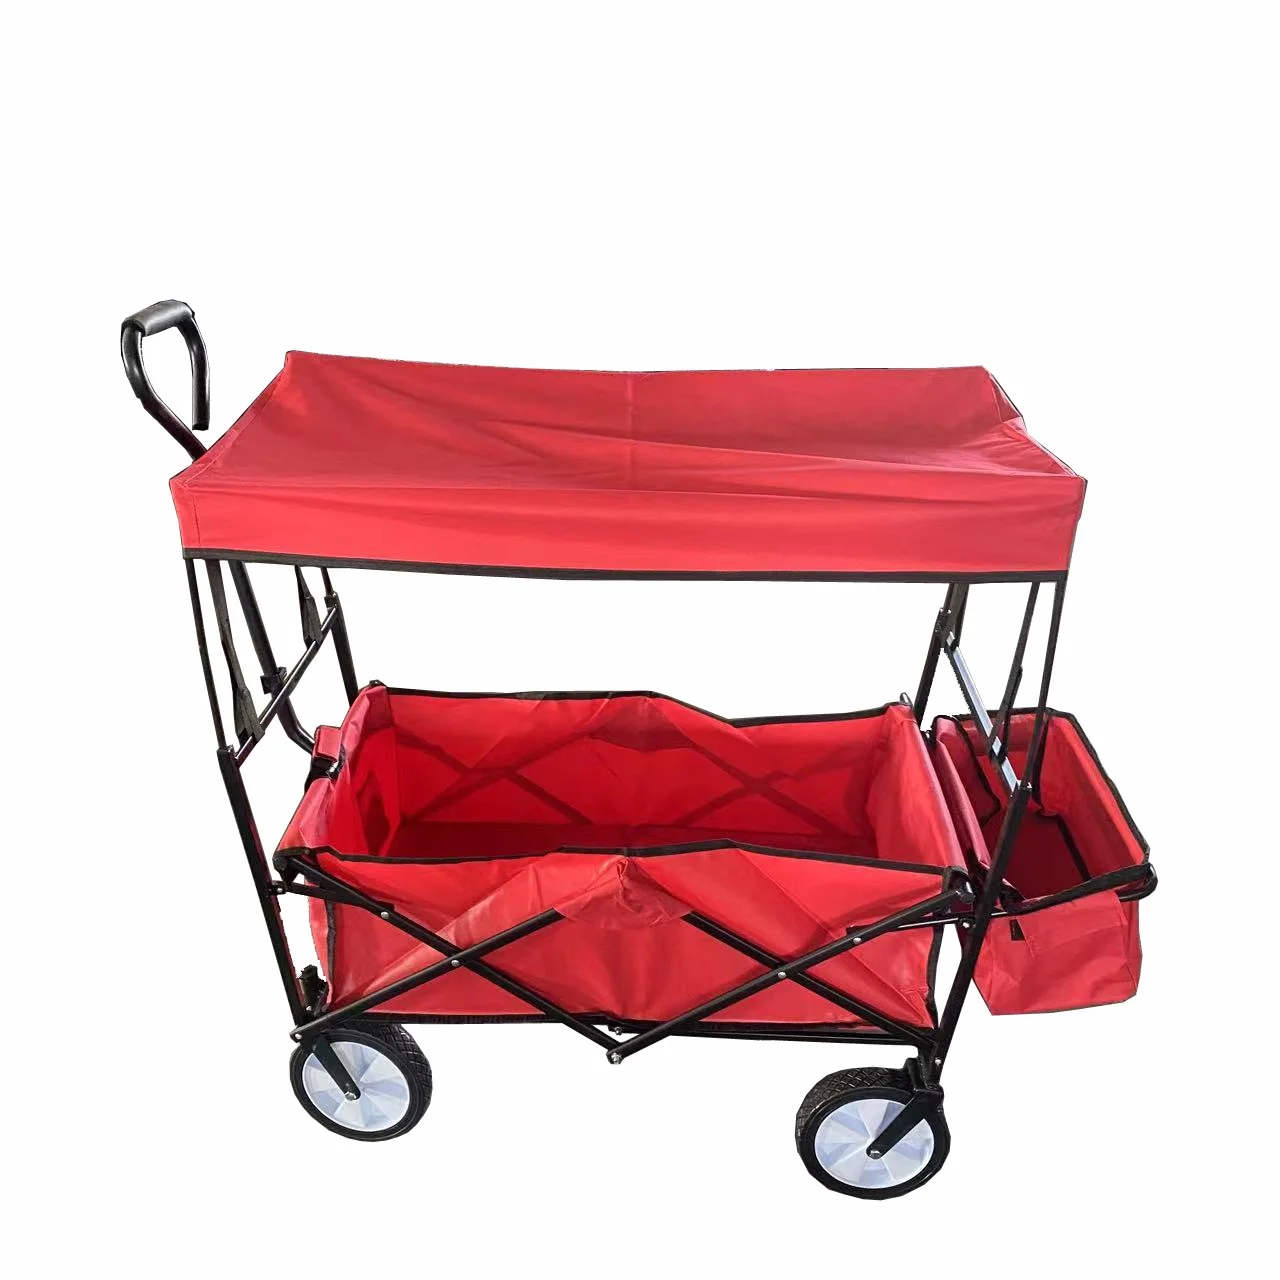 Fém kézikocsi, összecsukható kerti kocsi ponyvával, tetővel, piros, max. 70kg teherbírás (A10)